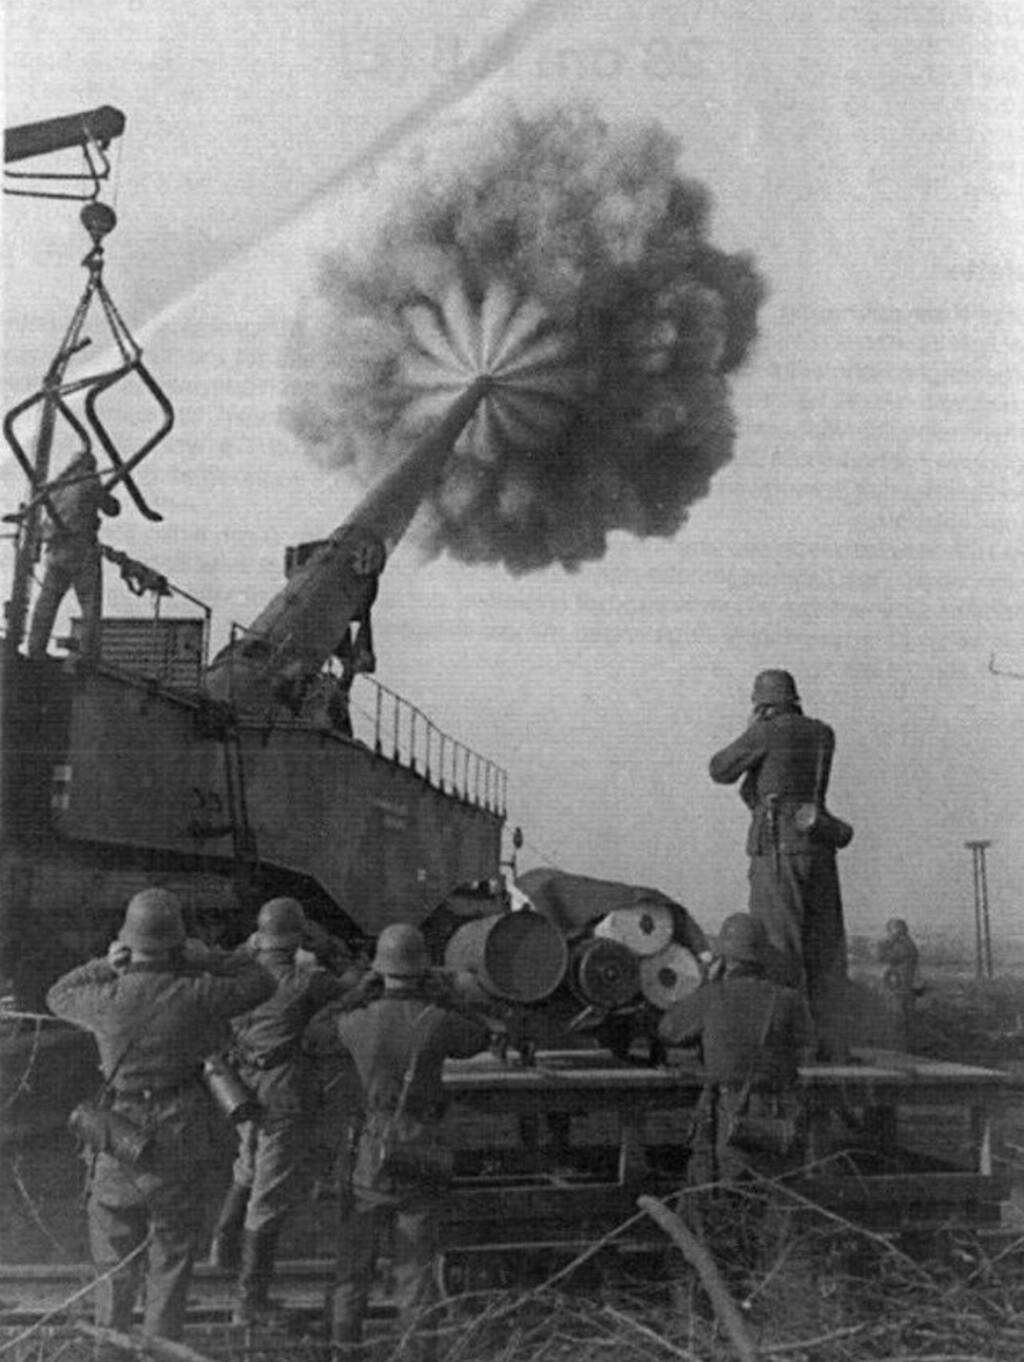 k5型利奥波德列车炮发射瞬间,该炮身管长2154米,全炮长41